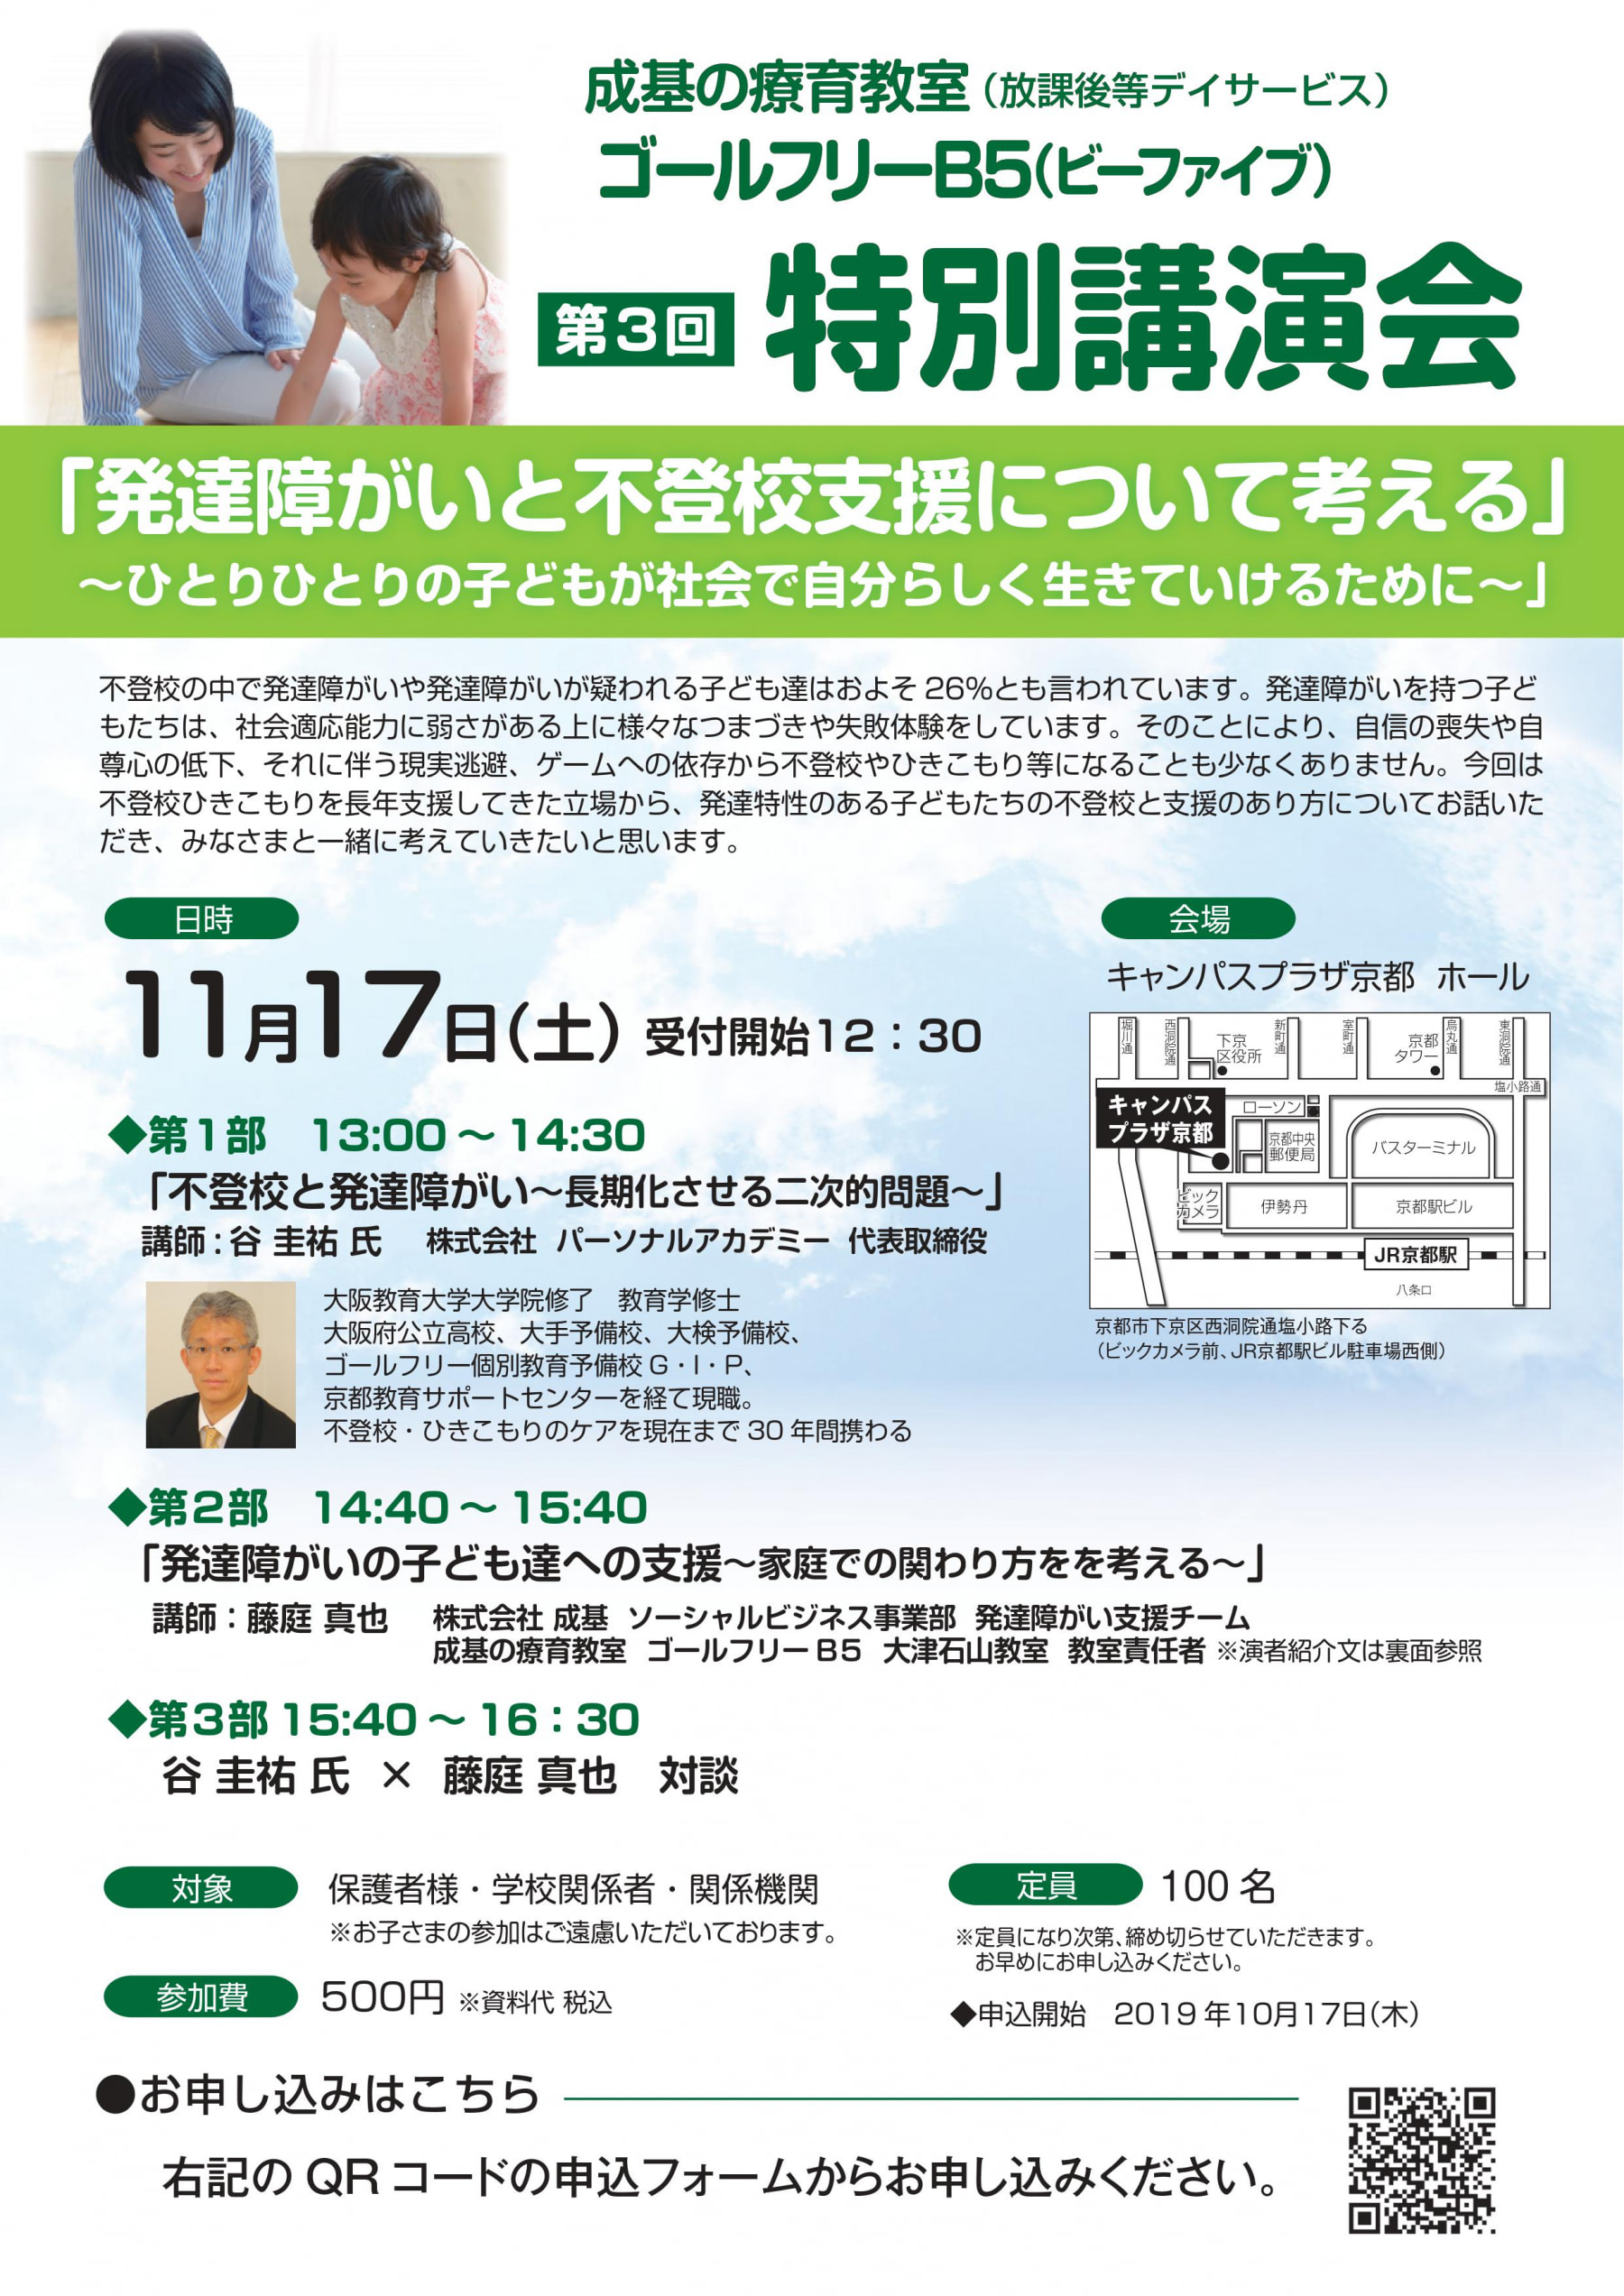 11月17日・京都で発達障がいの講演会に登壇します